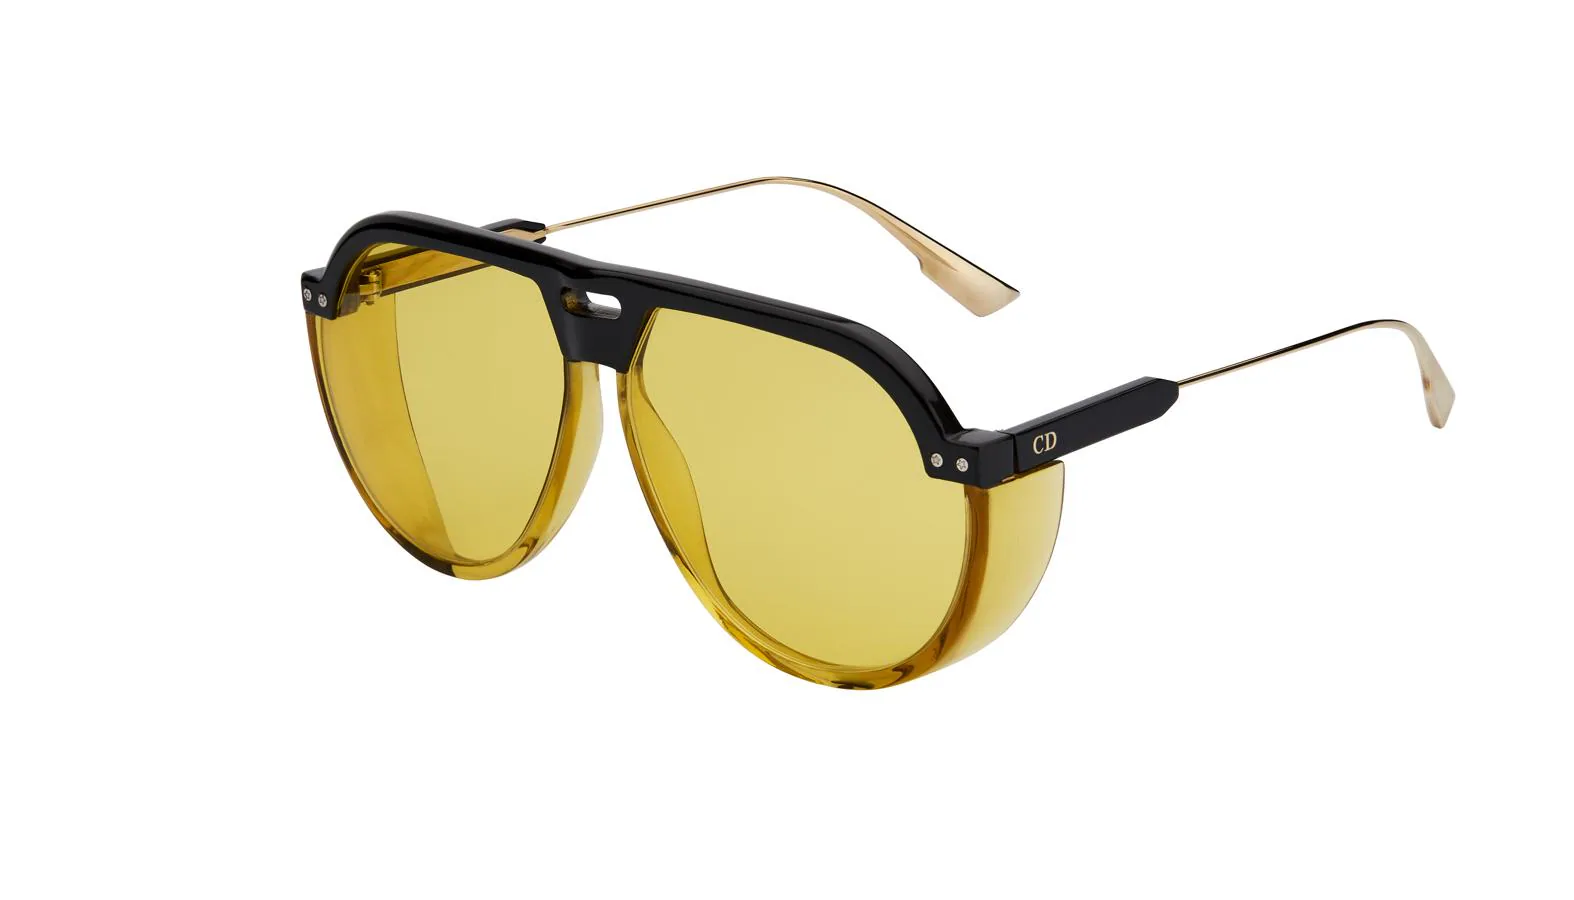 Gafas de sol de Dior. Modelo "DiorClub3" en color amarillo. (Precio: 360 euros)